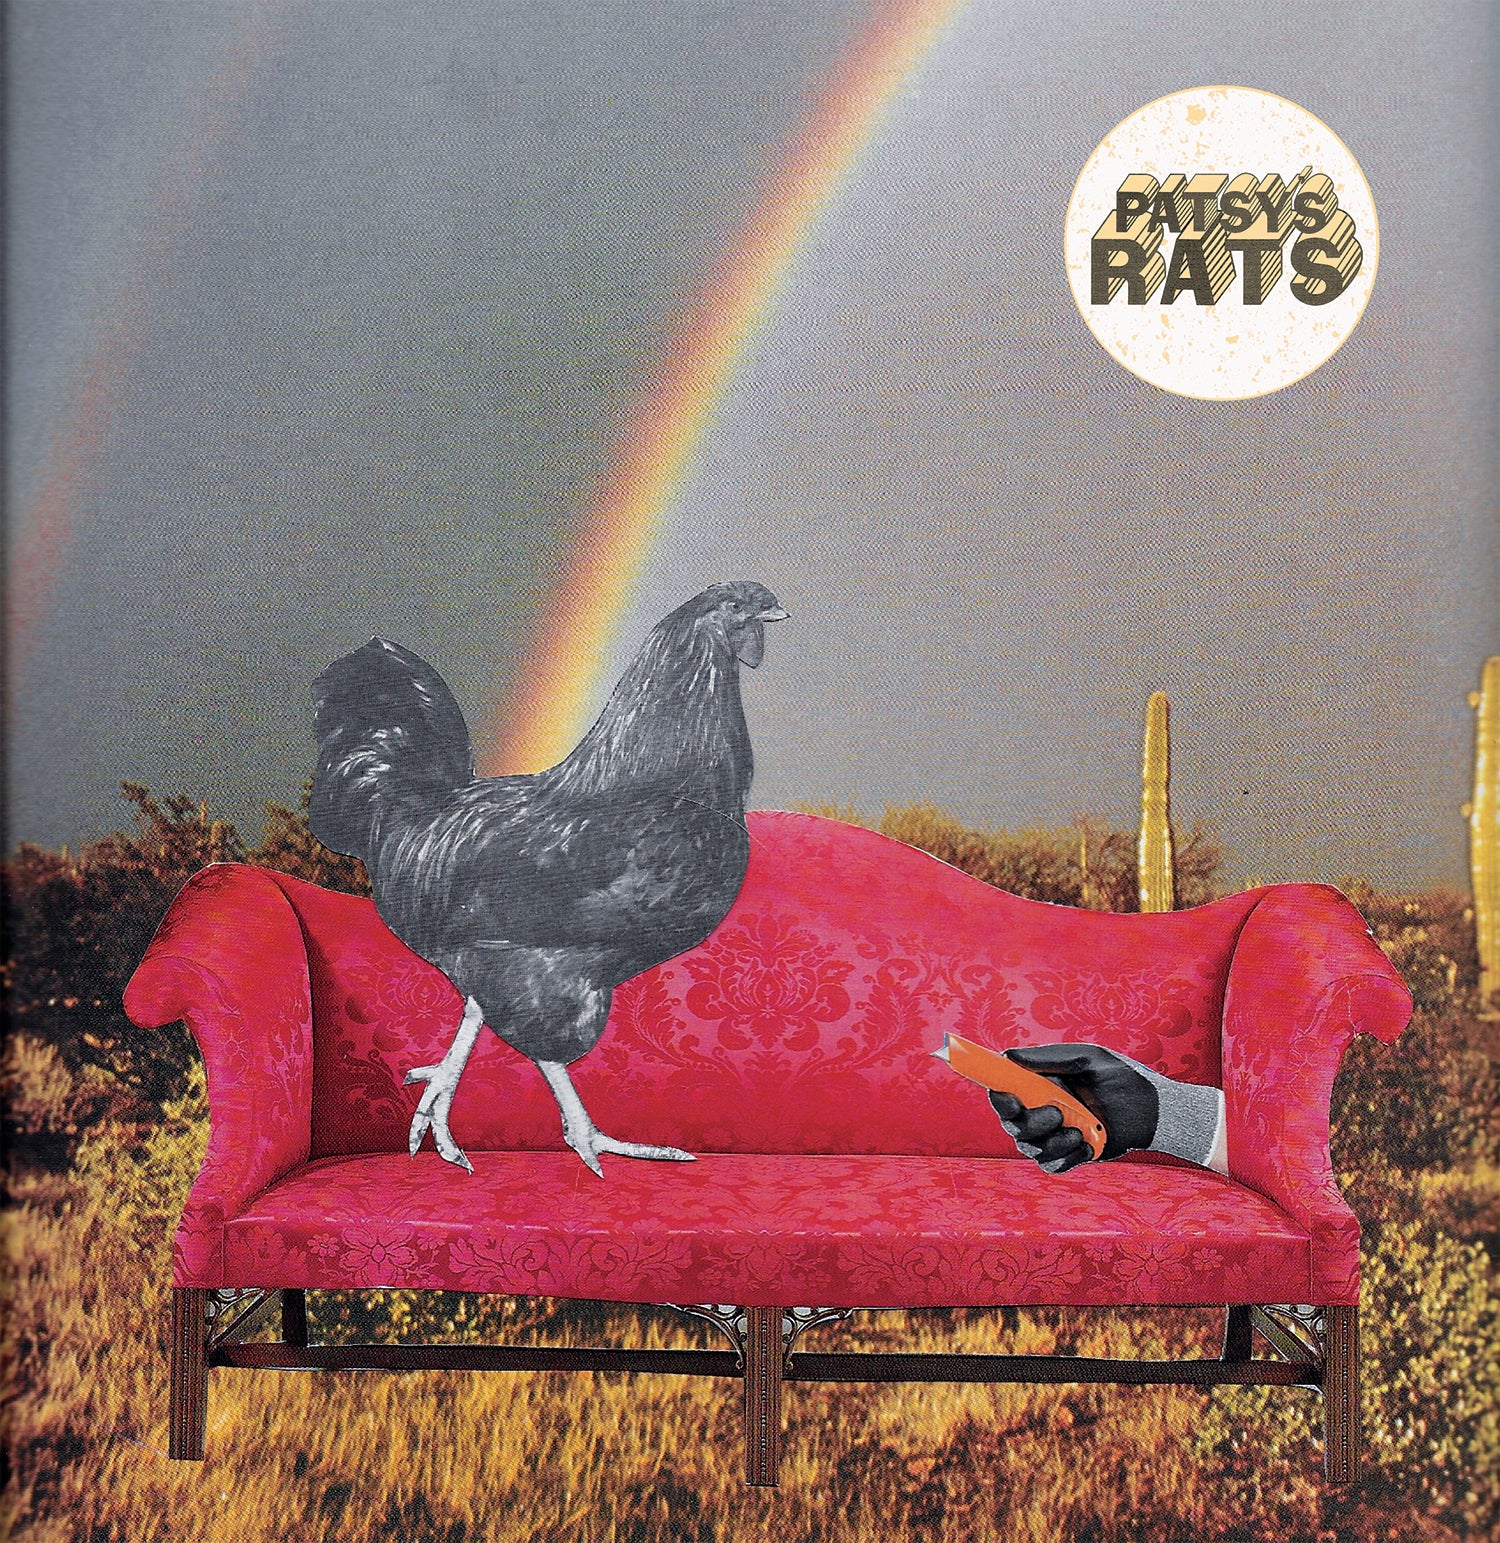 Patsy's Rats - Roundin' Up - New 7"